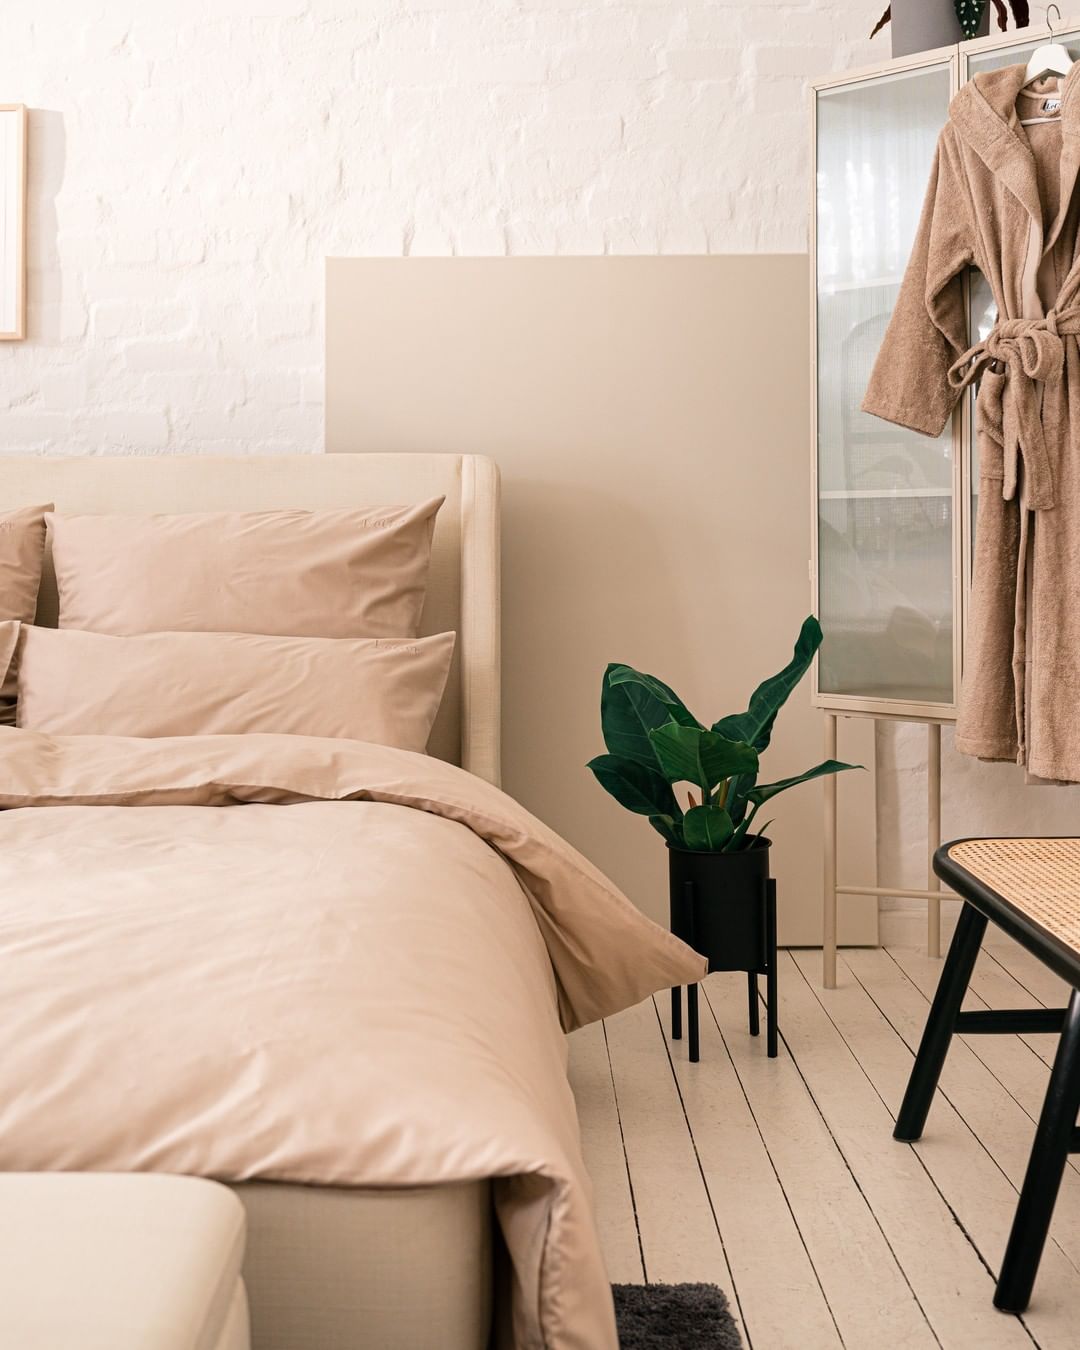 Otto (GmbH & Co KG) - Sweet Dreams. 💤 Ein Polsterbett in warmer Cremefarbe sorgt für mehr Gemütlichkeit in deinem Schlafzimmer und gleichzeitig für süße Träume. 🤍 #LeGerHomexOTTO #OTTOliving